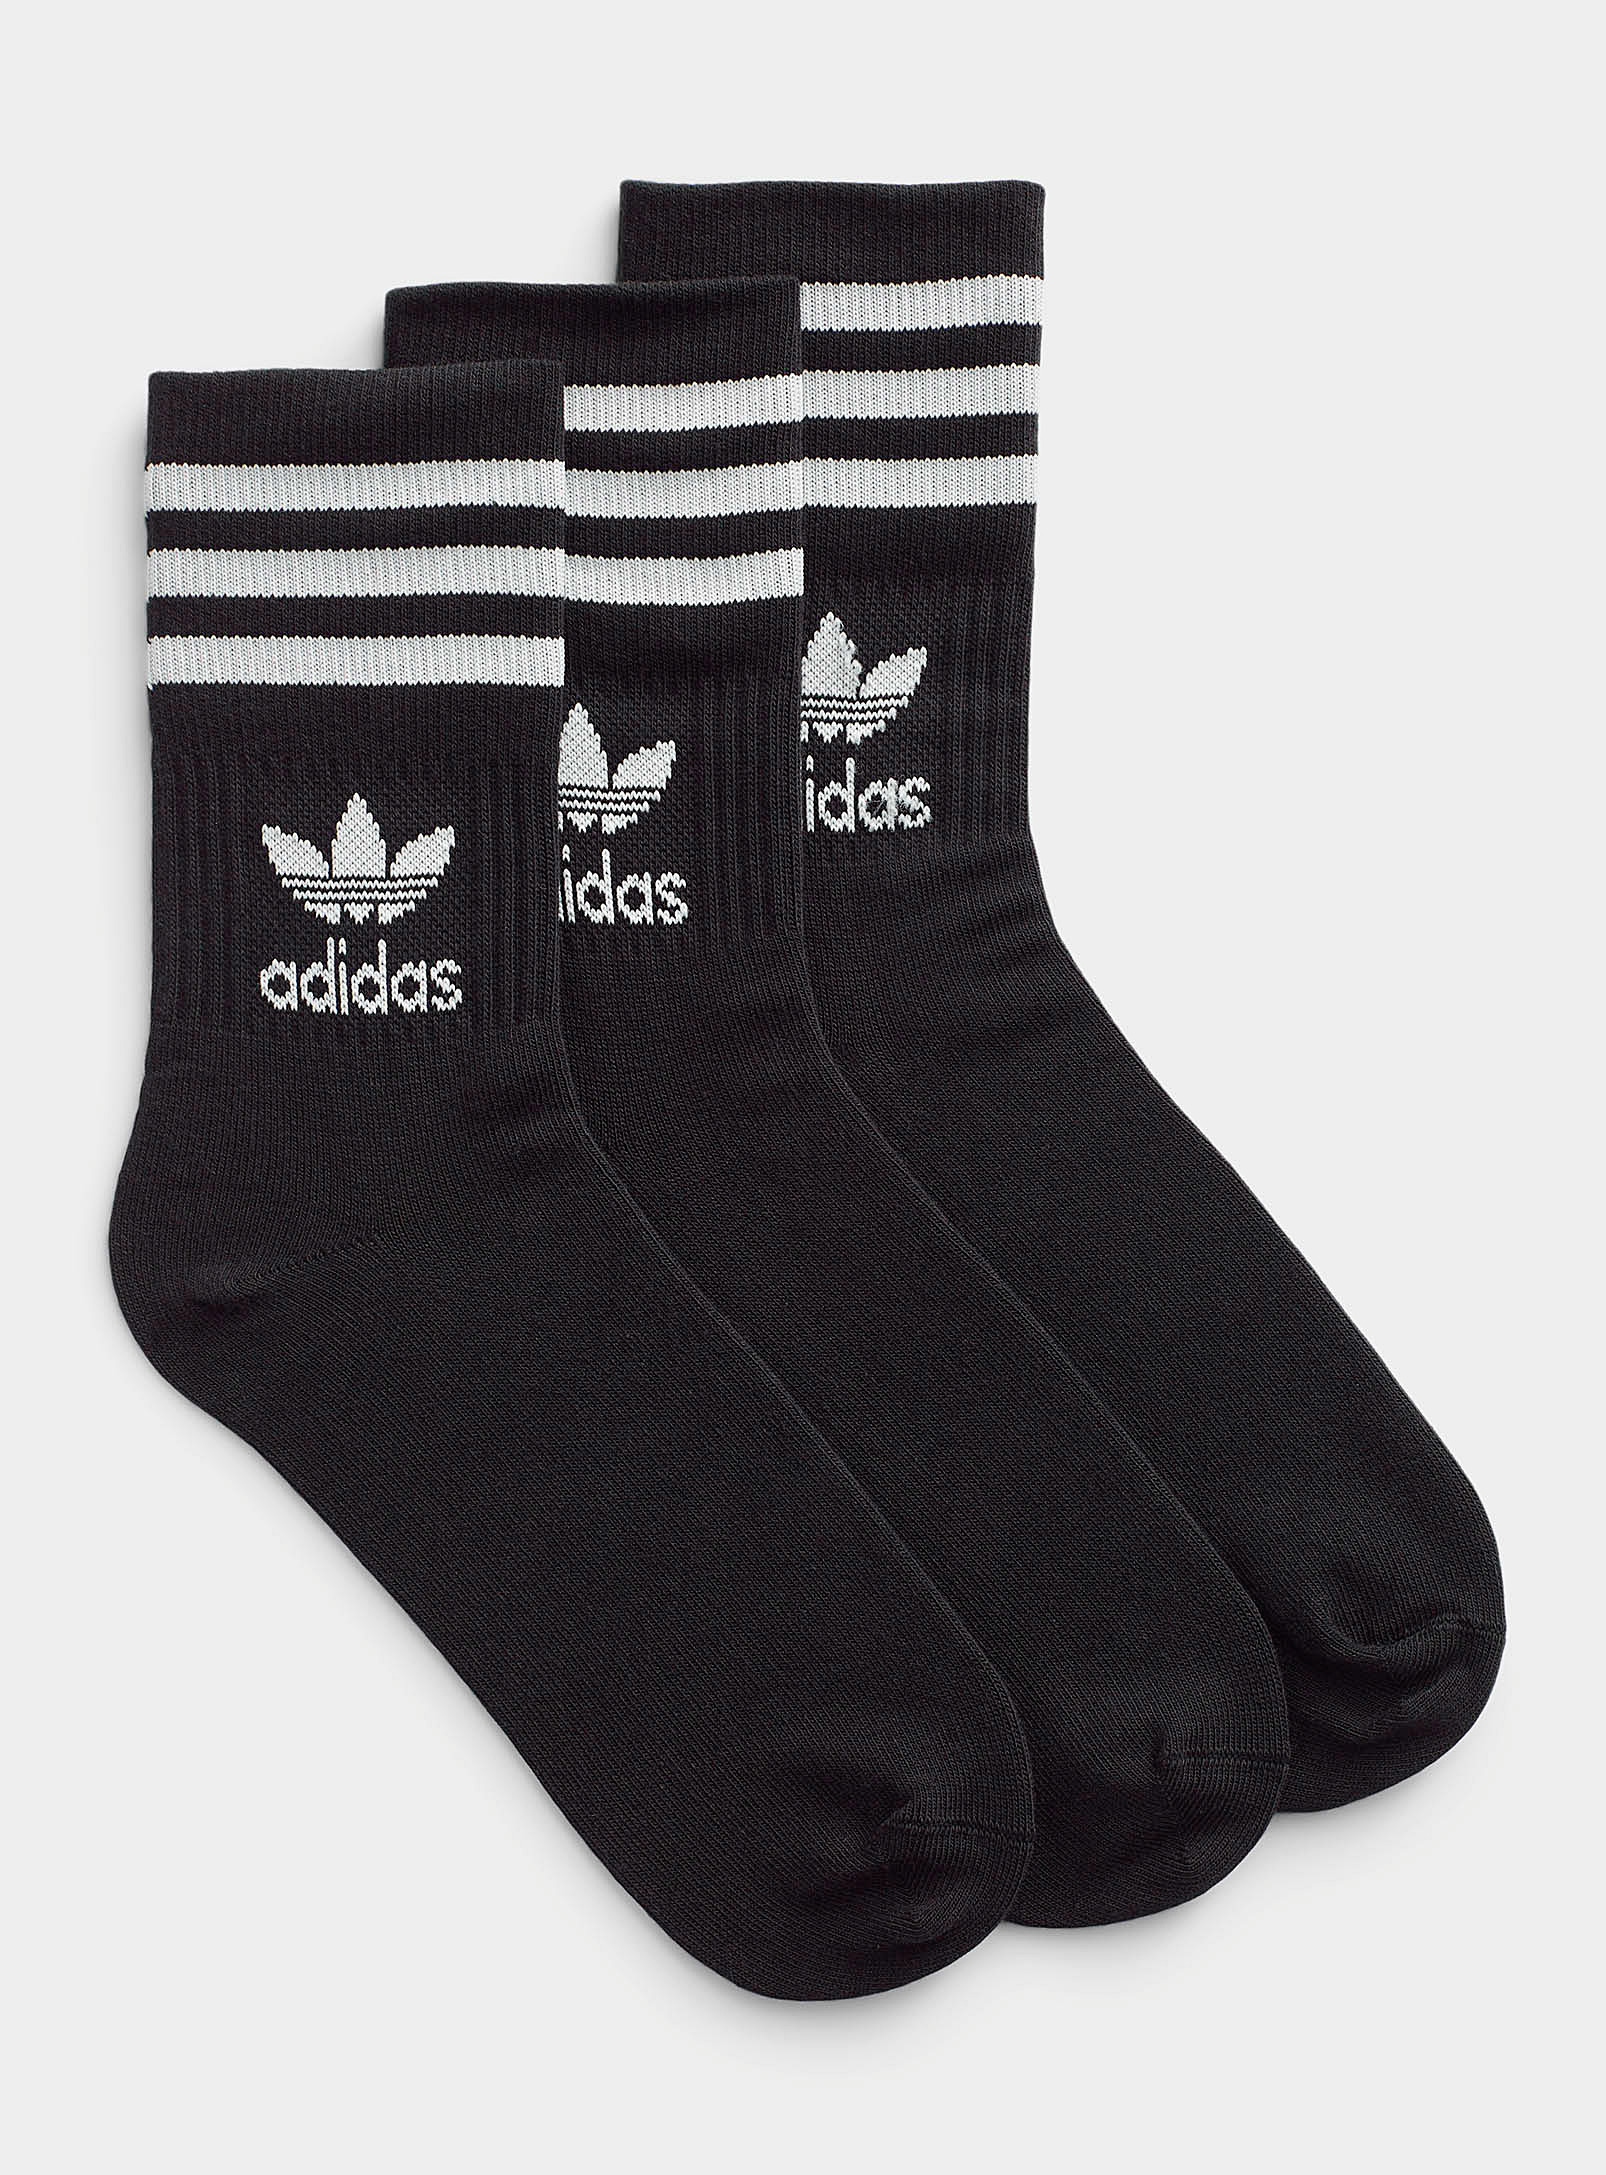 Adidas Originals - Les chaussettes athlétiques noires Ensemble de 3